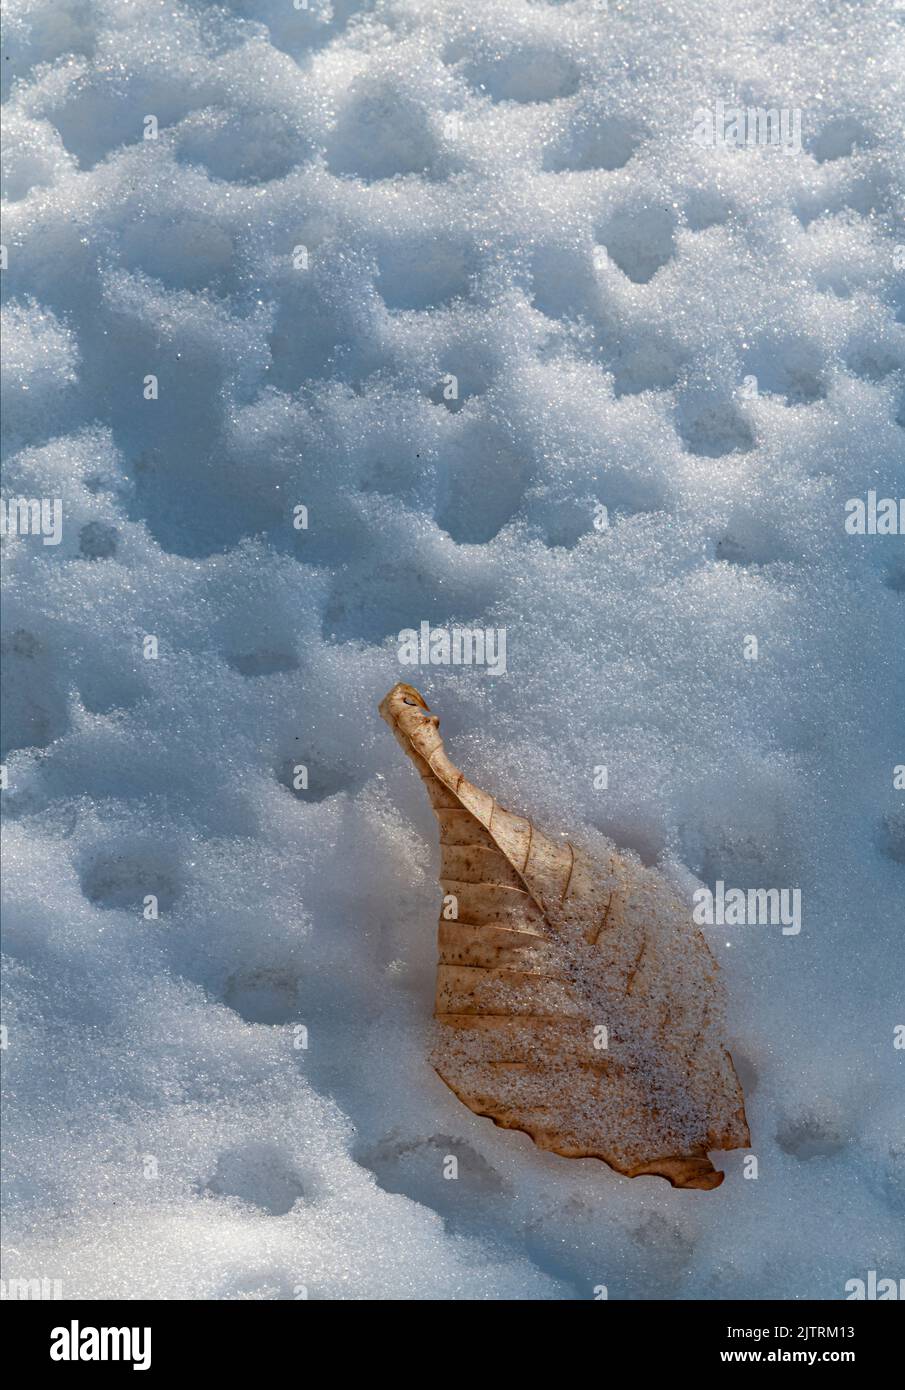 Una foglia di faggio lasciata dall'autunno precedente è caduta su pock di neve marcata con palline di neve che si sciolgono e cadono dagli alberi sopra, Ellison Bluff Foto Stock